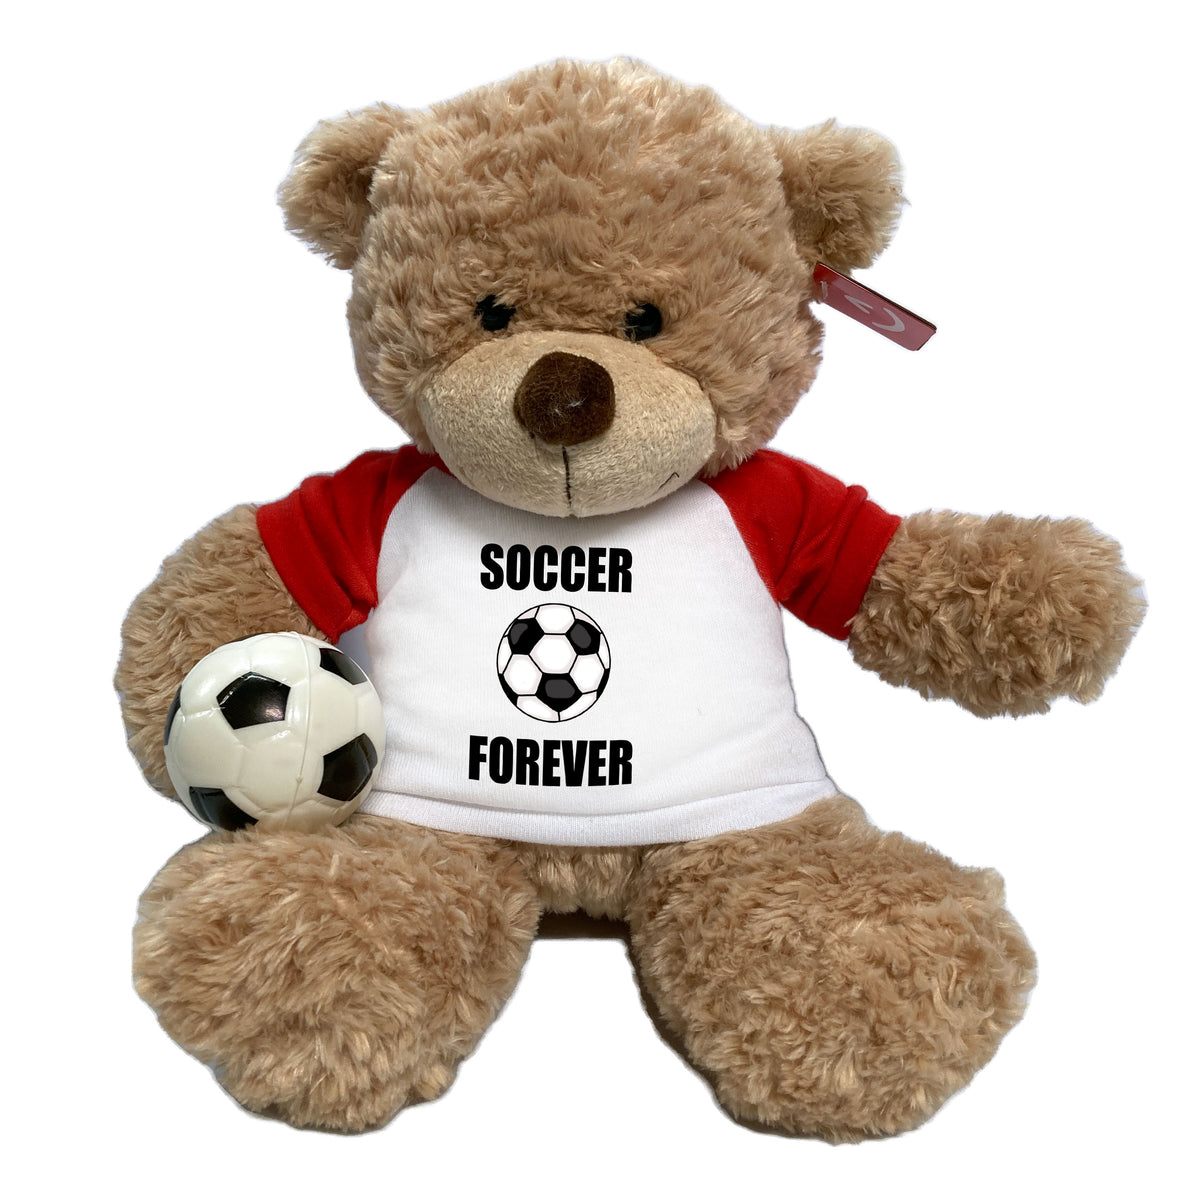 Soccer Teddy Bear - Personalized 13" Bonny Bear